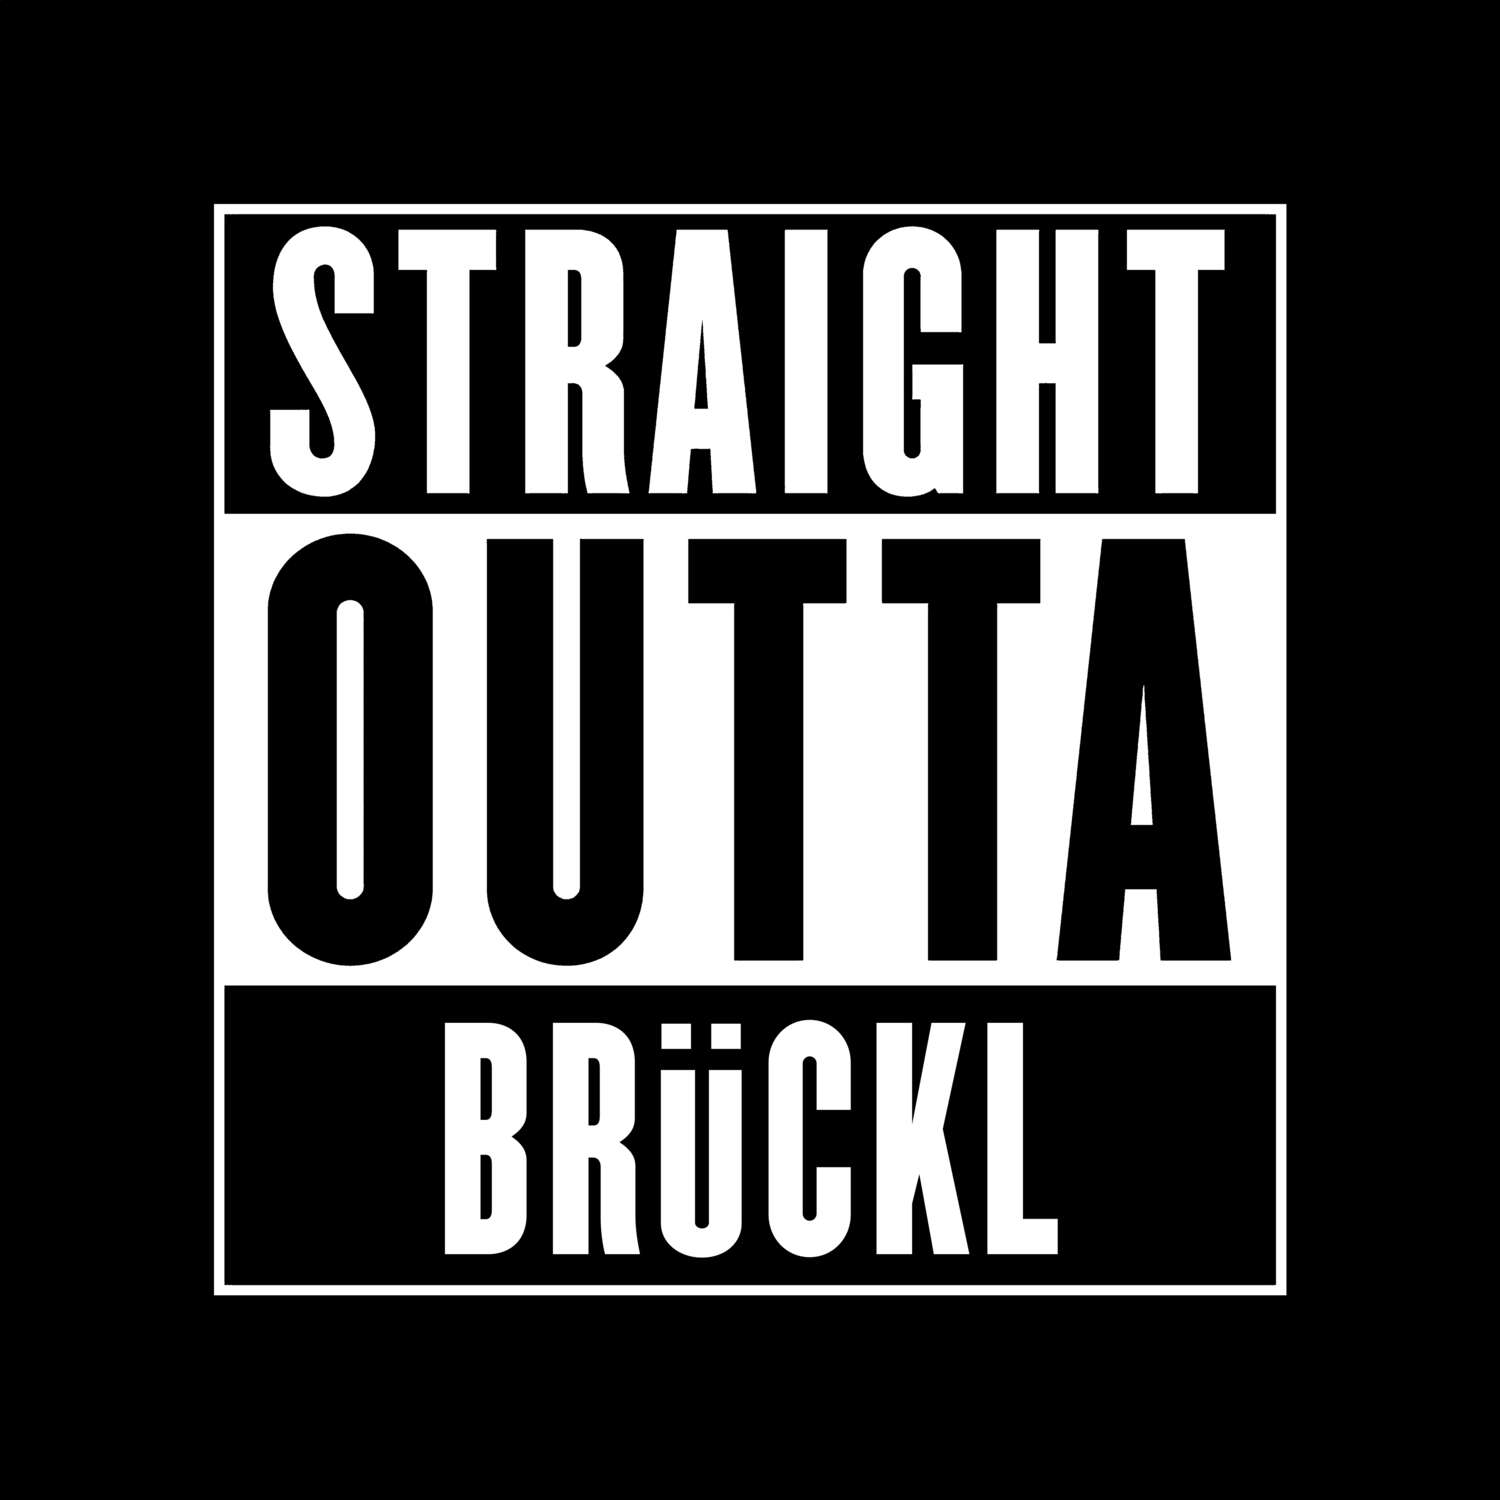 Brückl T-Shirt »Straight Outta«